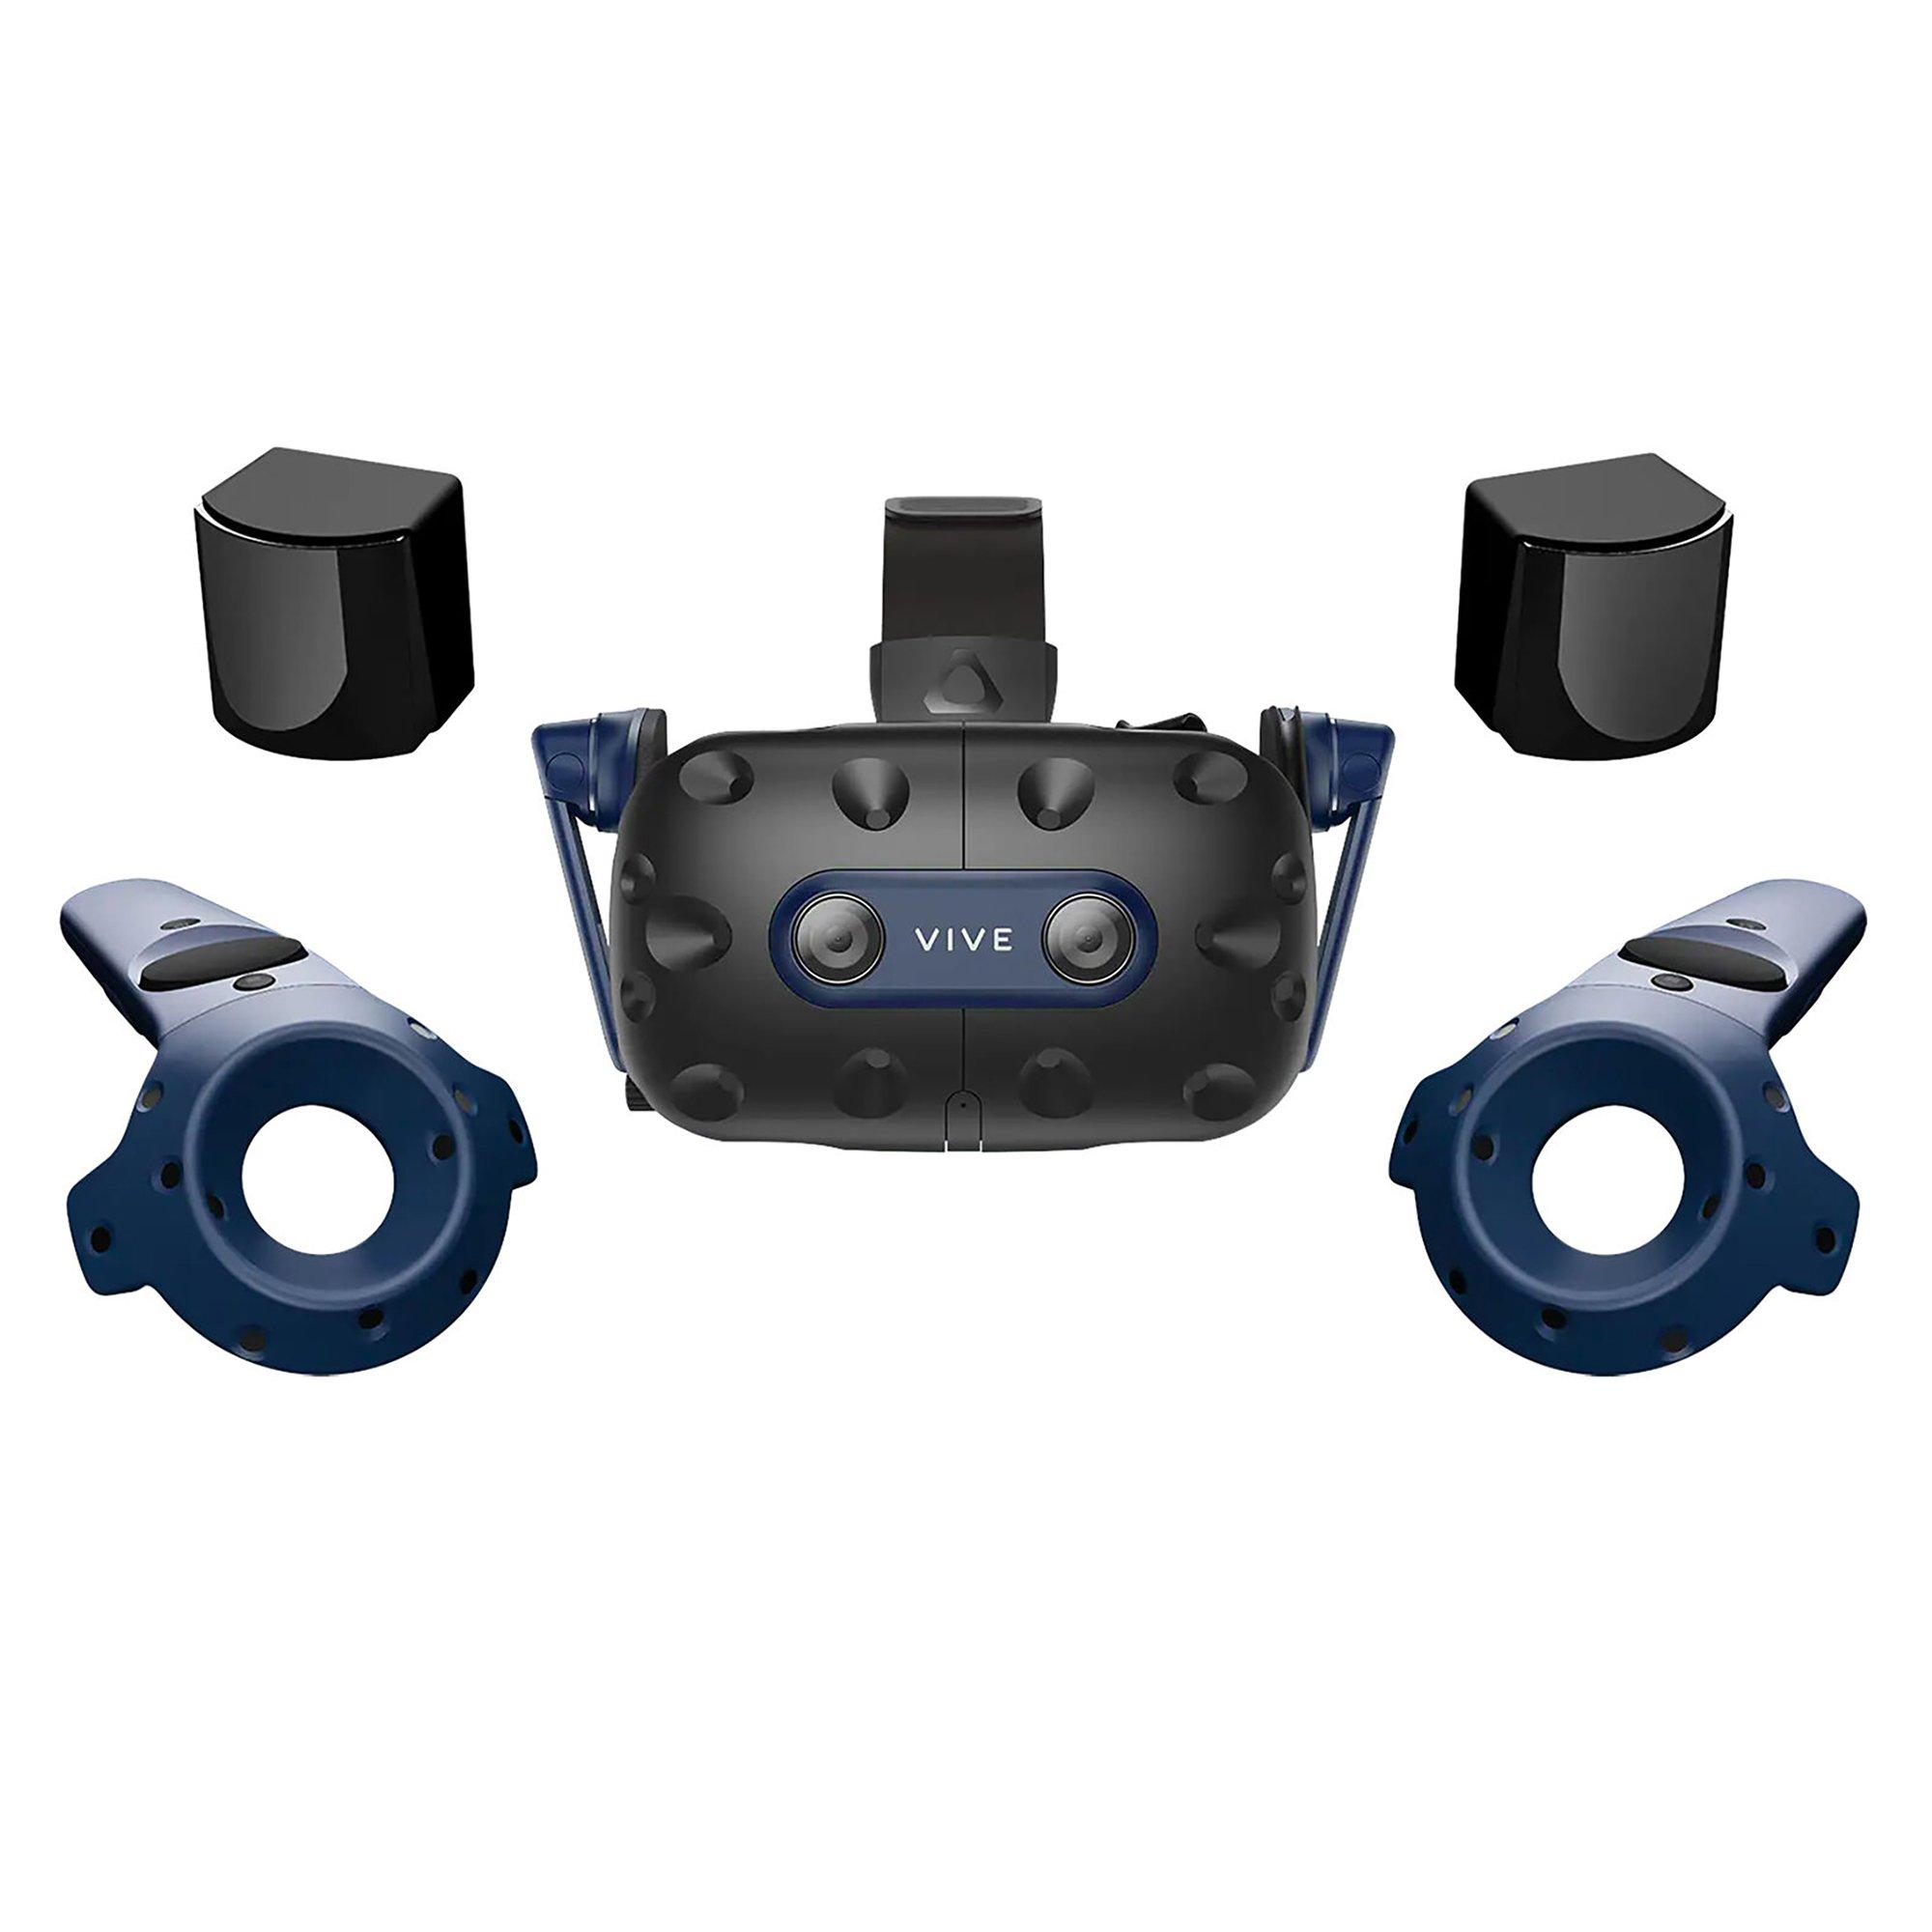 HTC VIVE Pro 2 Virtual Reality System